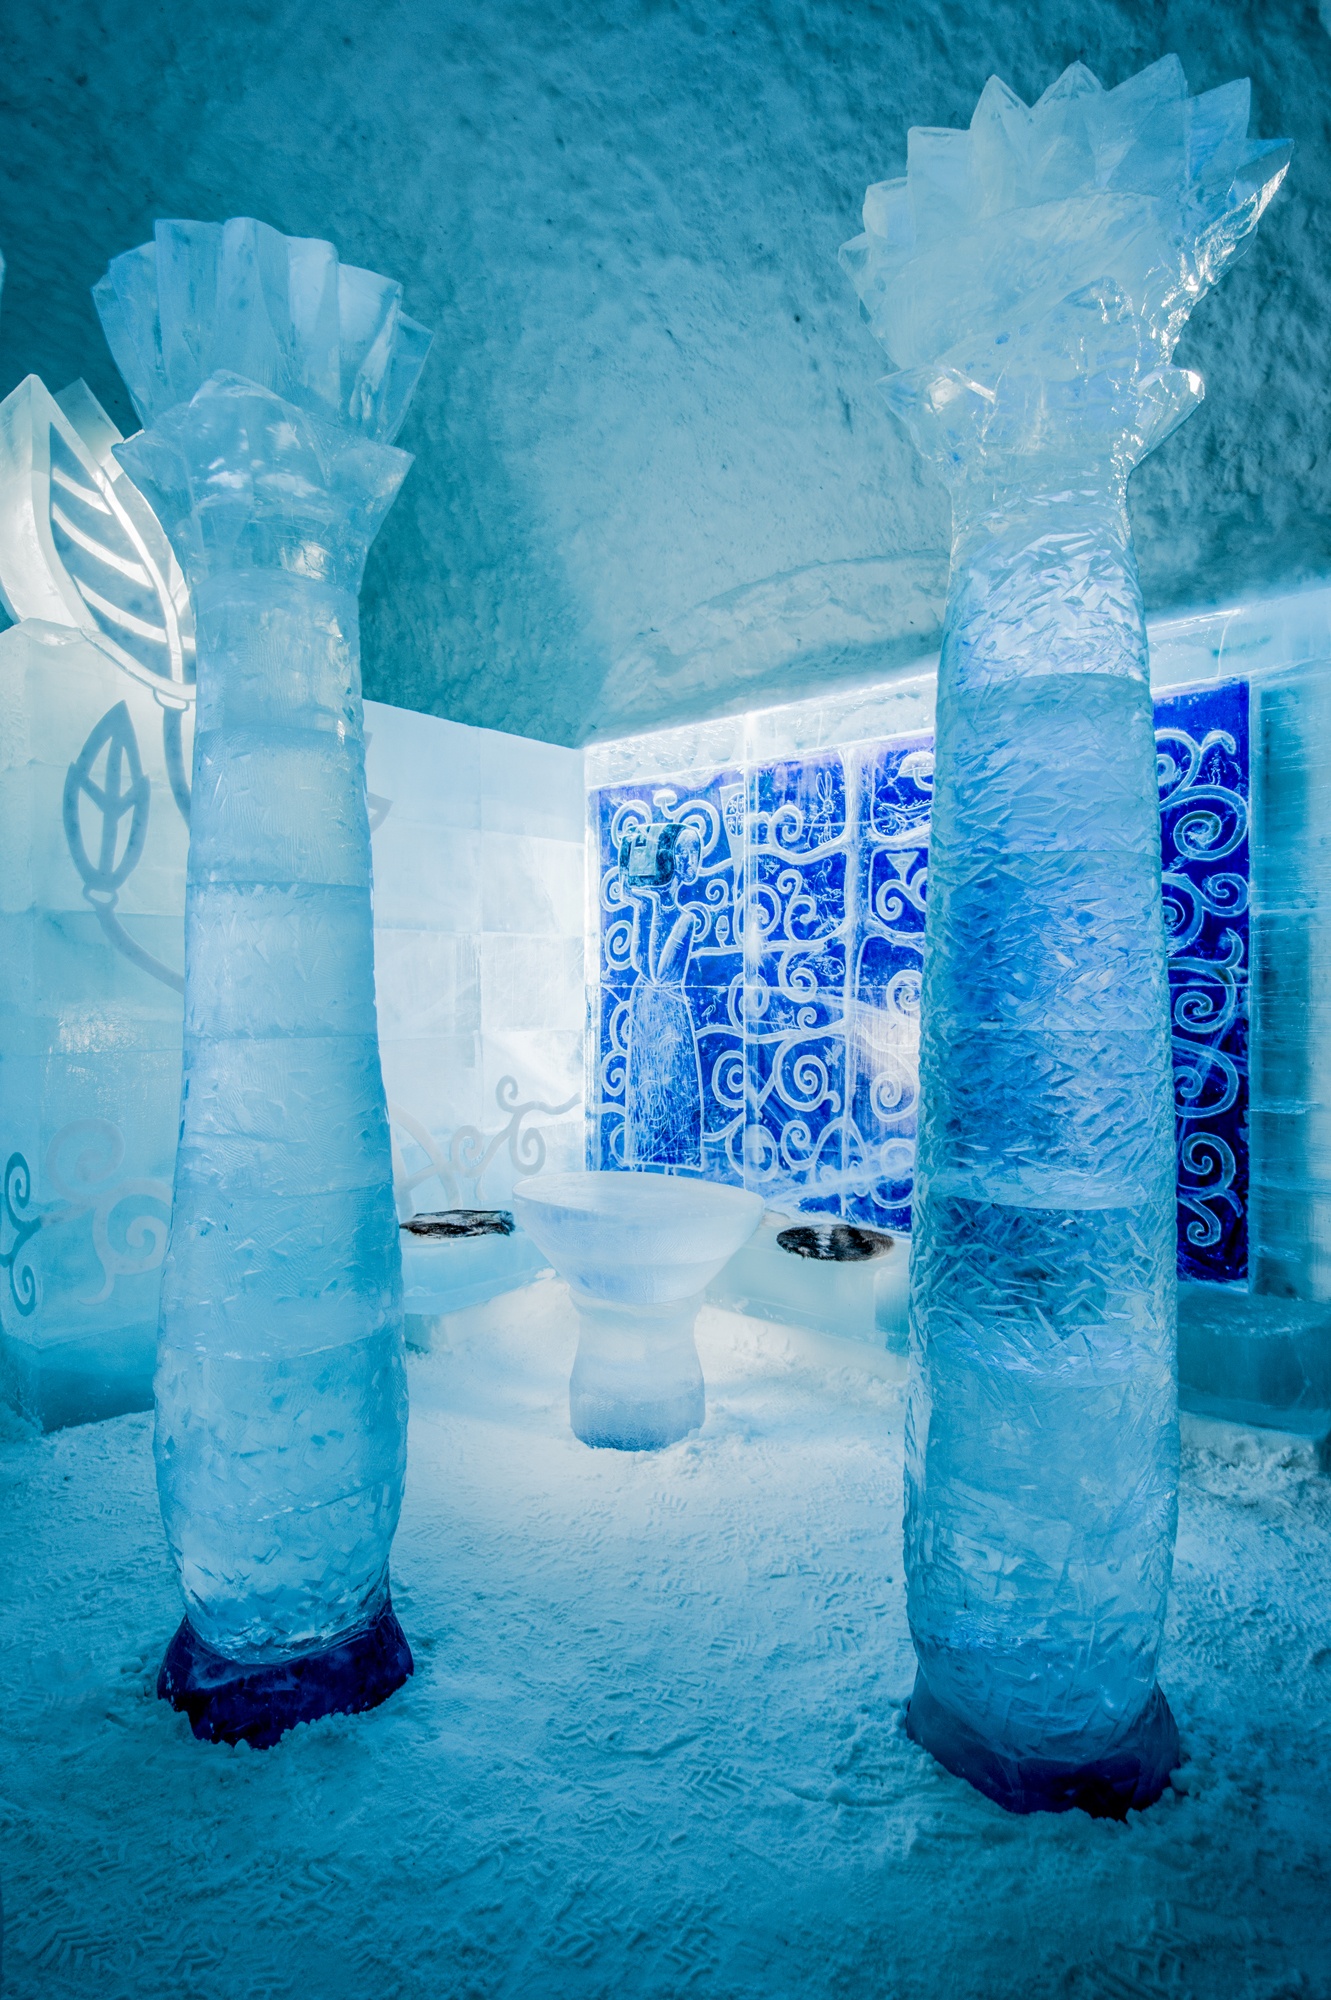 imagen 6 de Icehotel, el hotel de hielo, ha abierto sus suites de invierno con mucho arte.